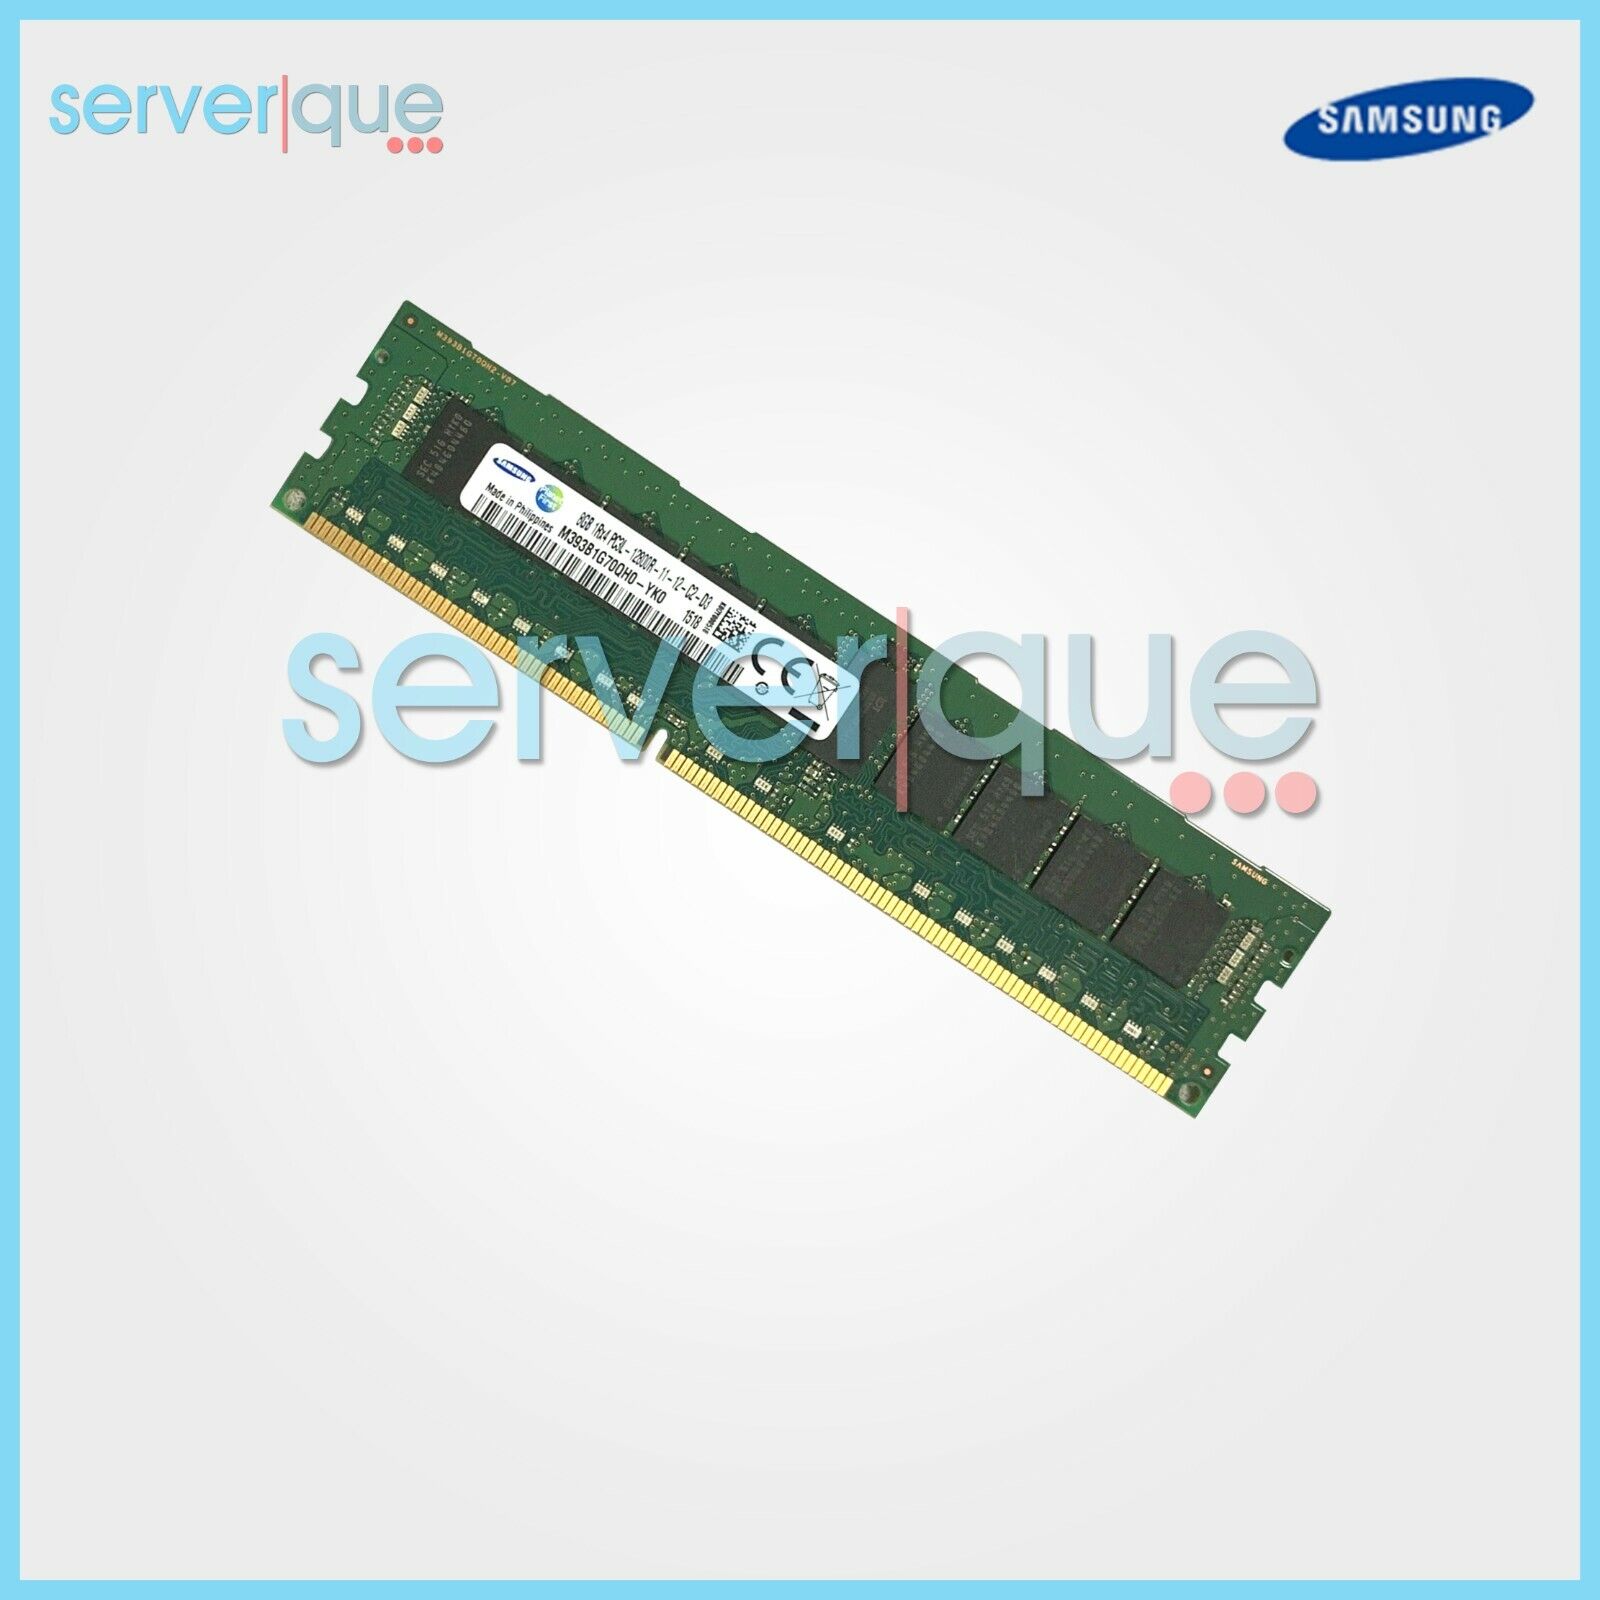 8064円 素晴らしい価格 MJ708G2W 日立製作所 8GB メモリーボード DDR3 1333 Registered DIMM Samsung M393B1K70DH0-CH9